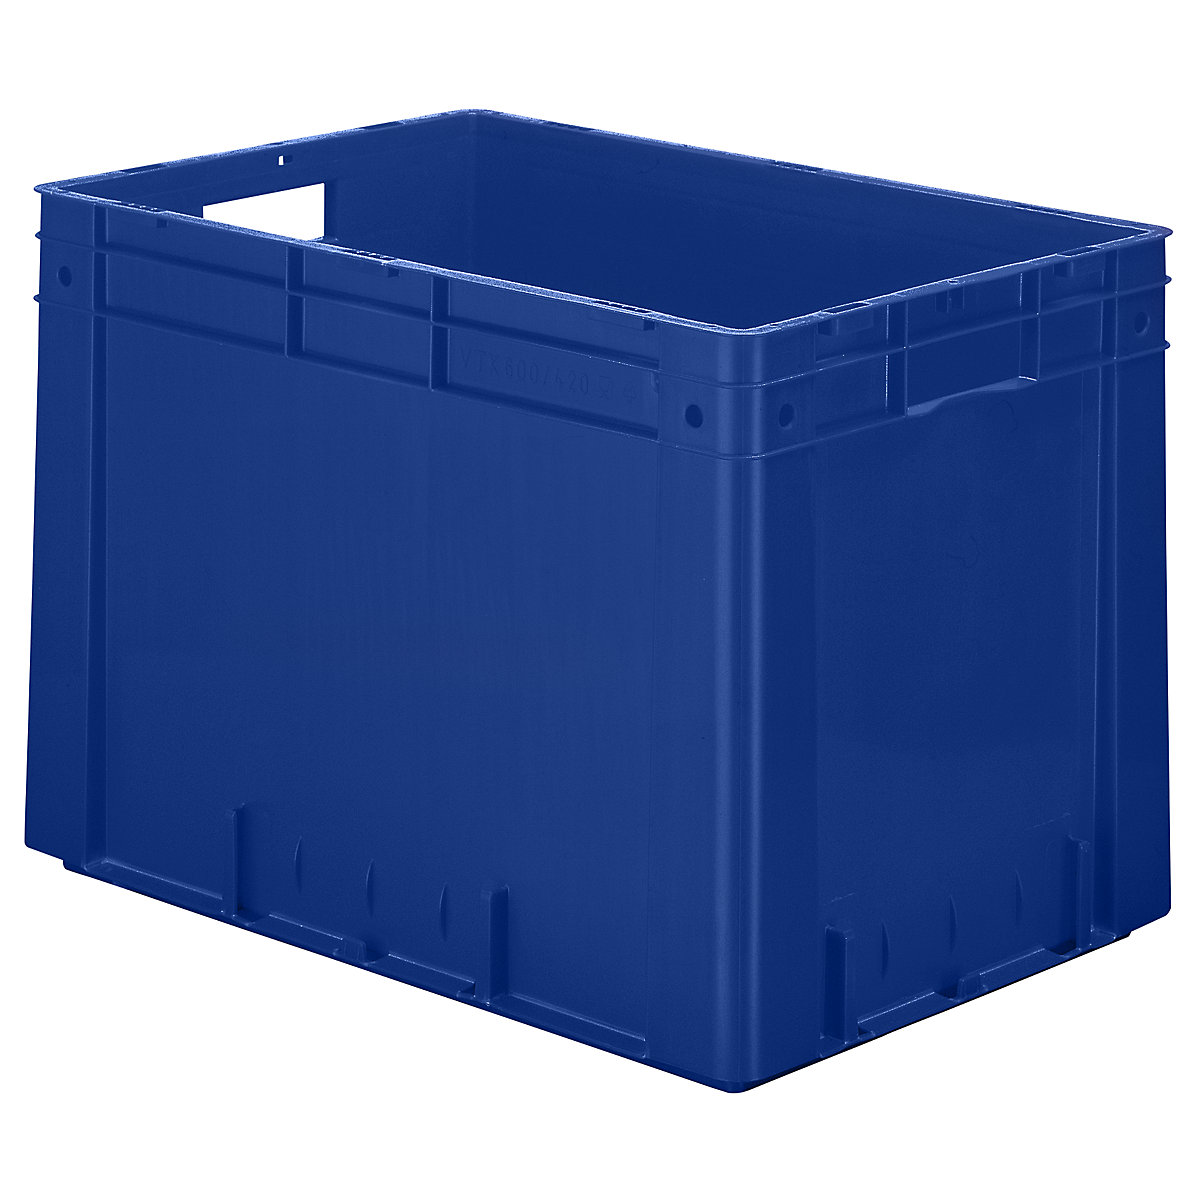 Euro-prepravka na ťažký náklad, polypropylén, objem 80 l, d x š x v 600 x 400 x 420 mm, steny uzatvorené, dno uzatvorené, modrá, OJ 2 ks